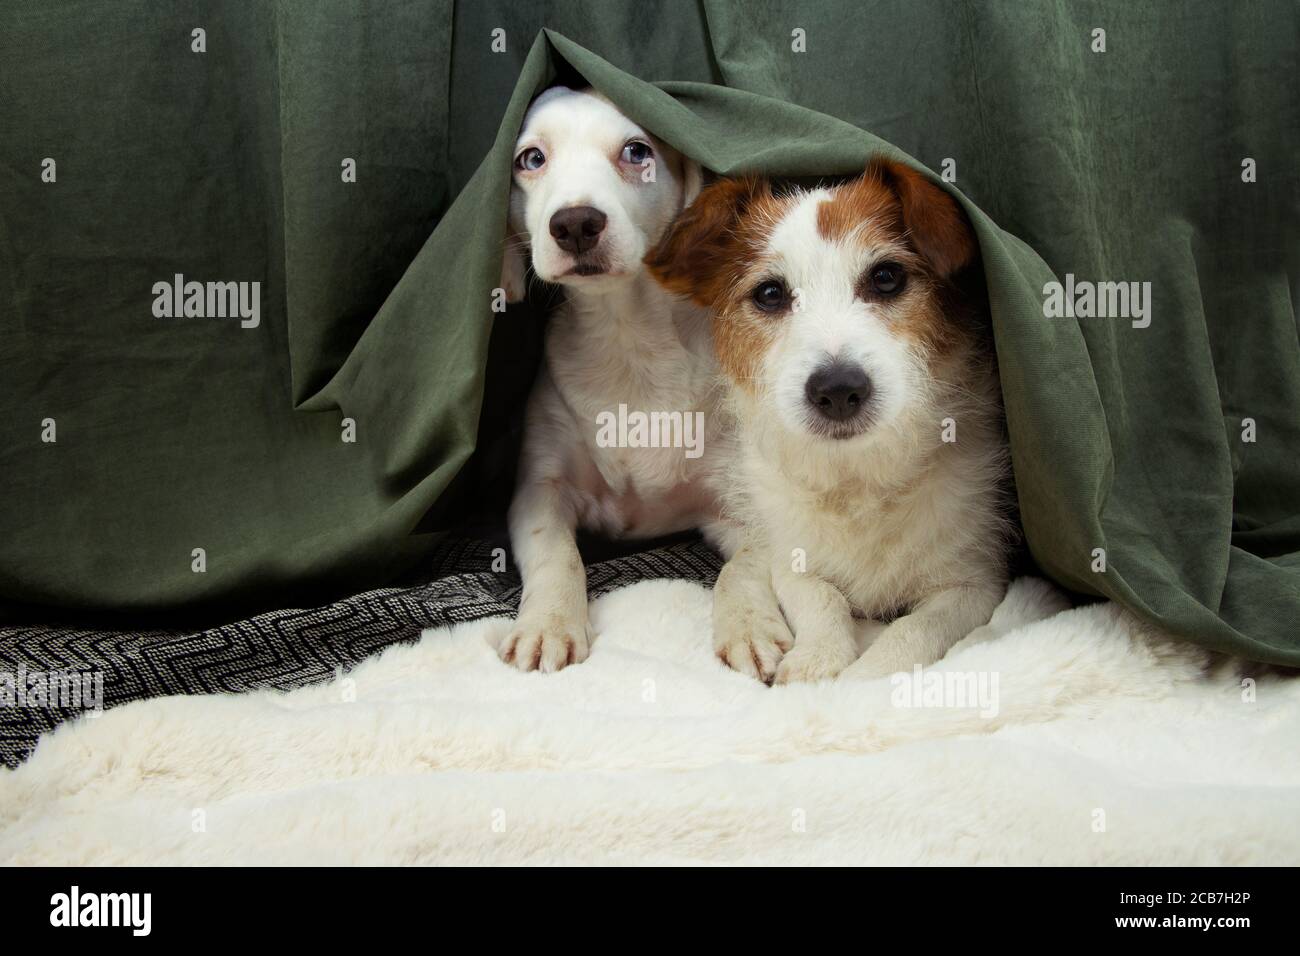 Deux chiens de chiots effrayés ou effrayés se cachent derrière un rideau vert à cause des feux d'artifice, des orages ou du bruit. Banque D'Images